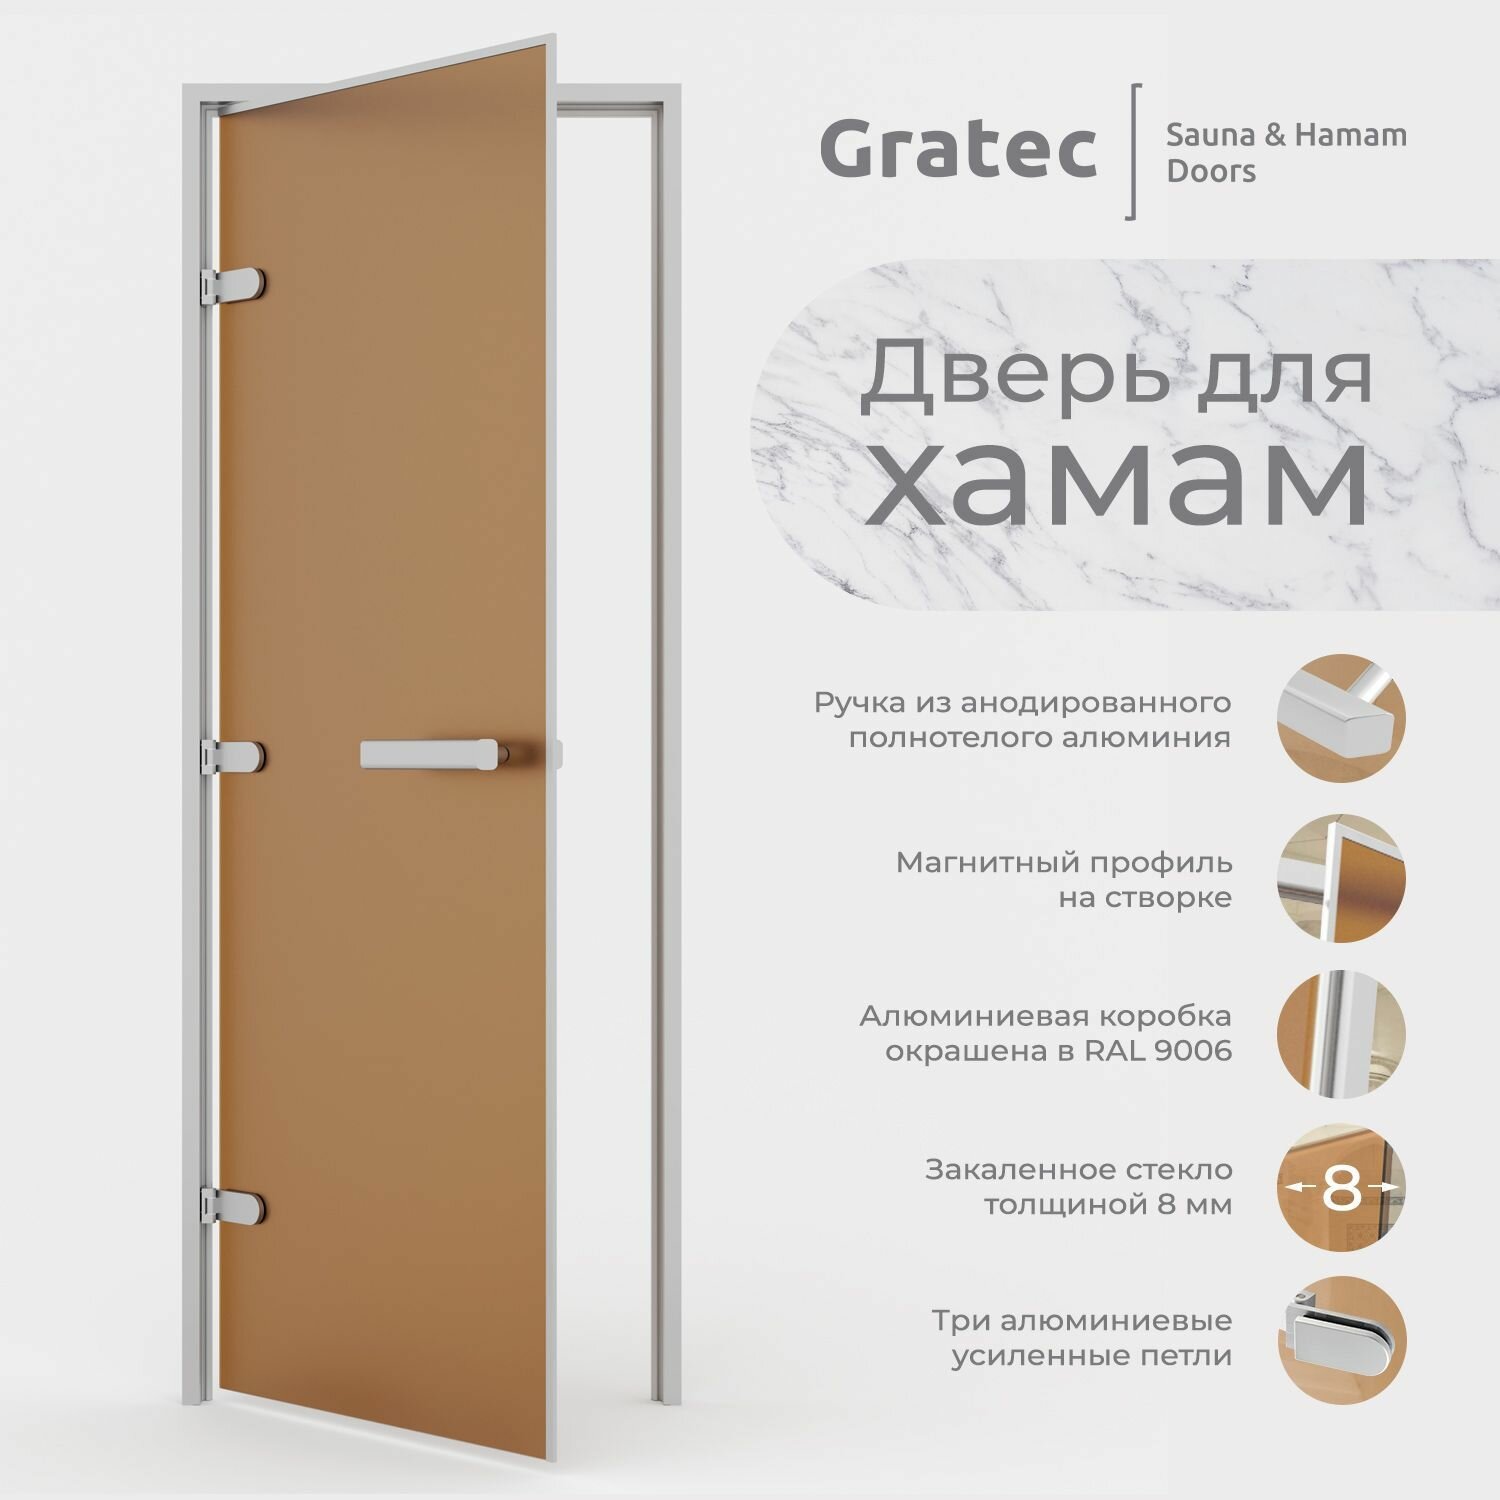 Дверь для хамам Gratec Диана, закаленное стекло 8 мм бронза матовое, левое открывание - фотография № 1